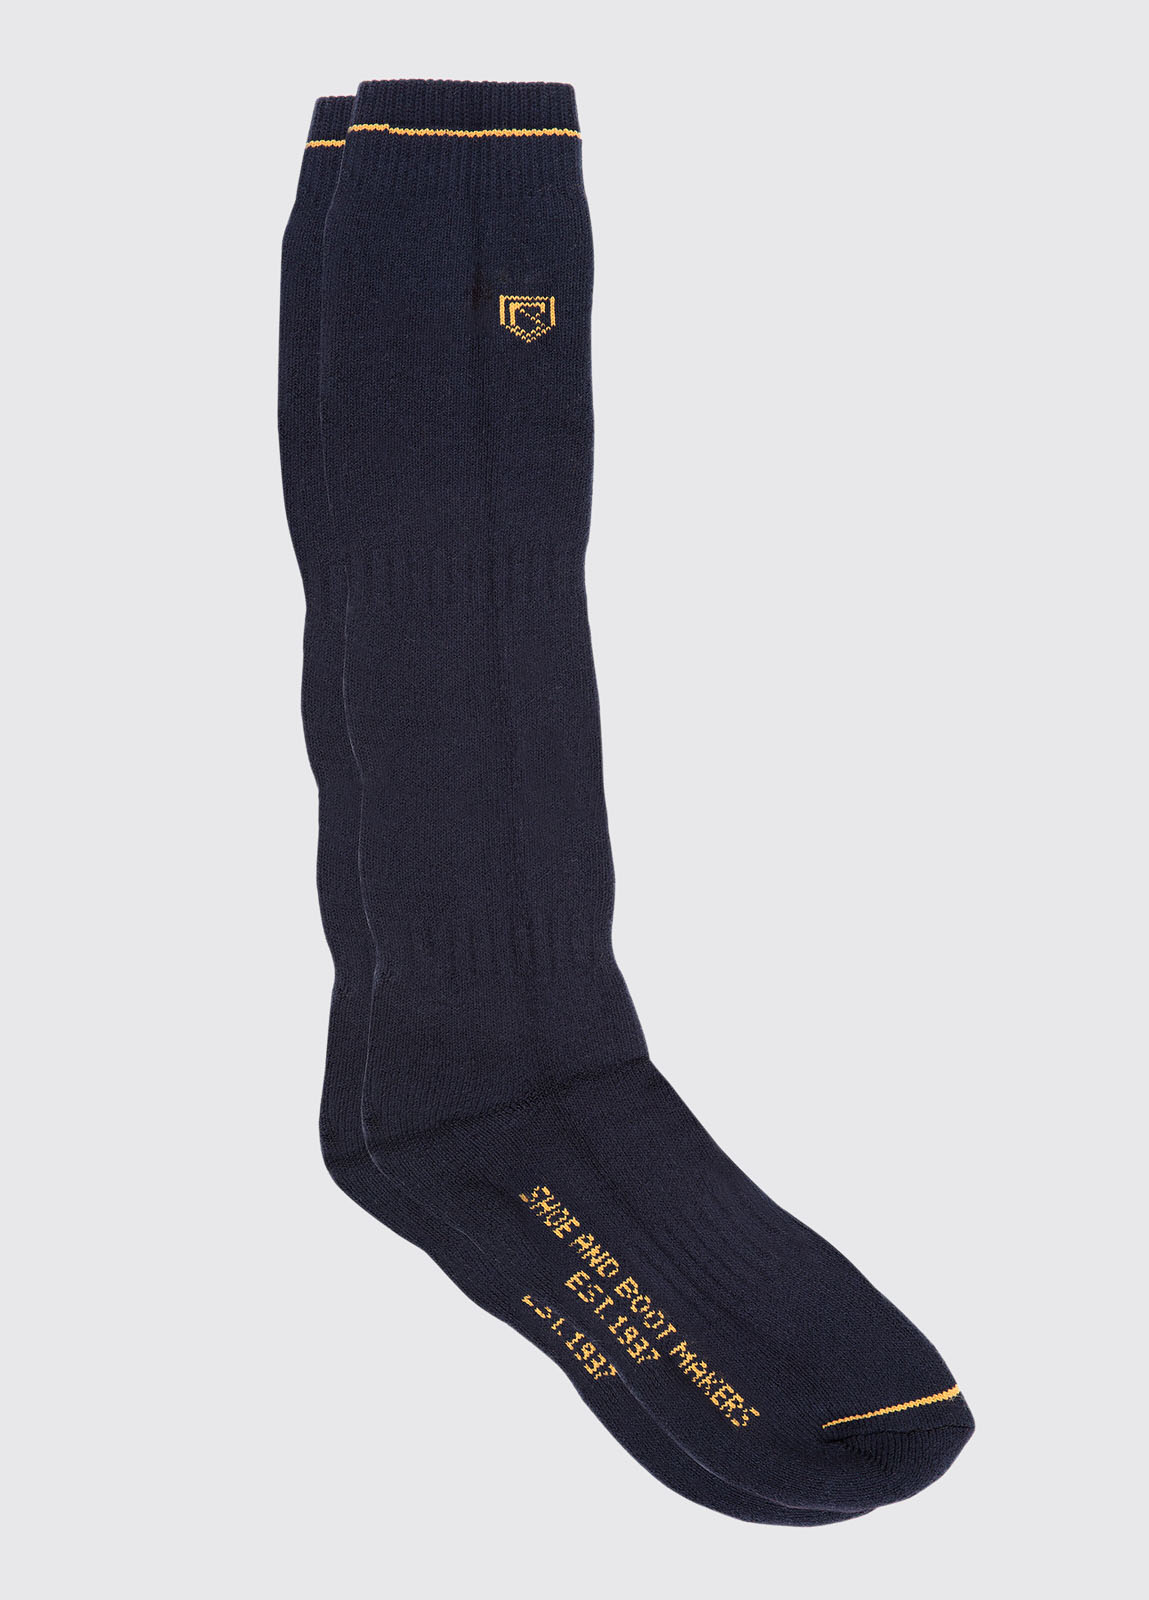 navy boot socks